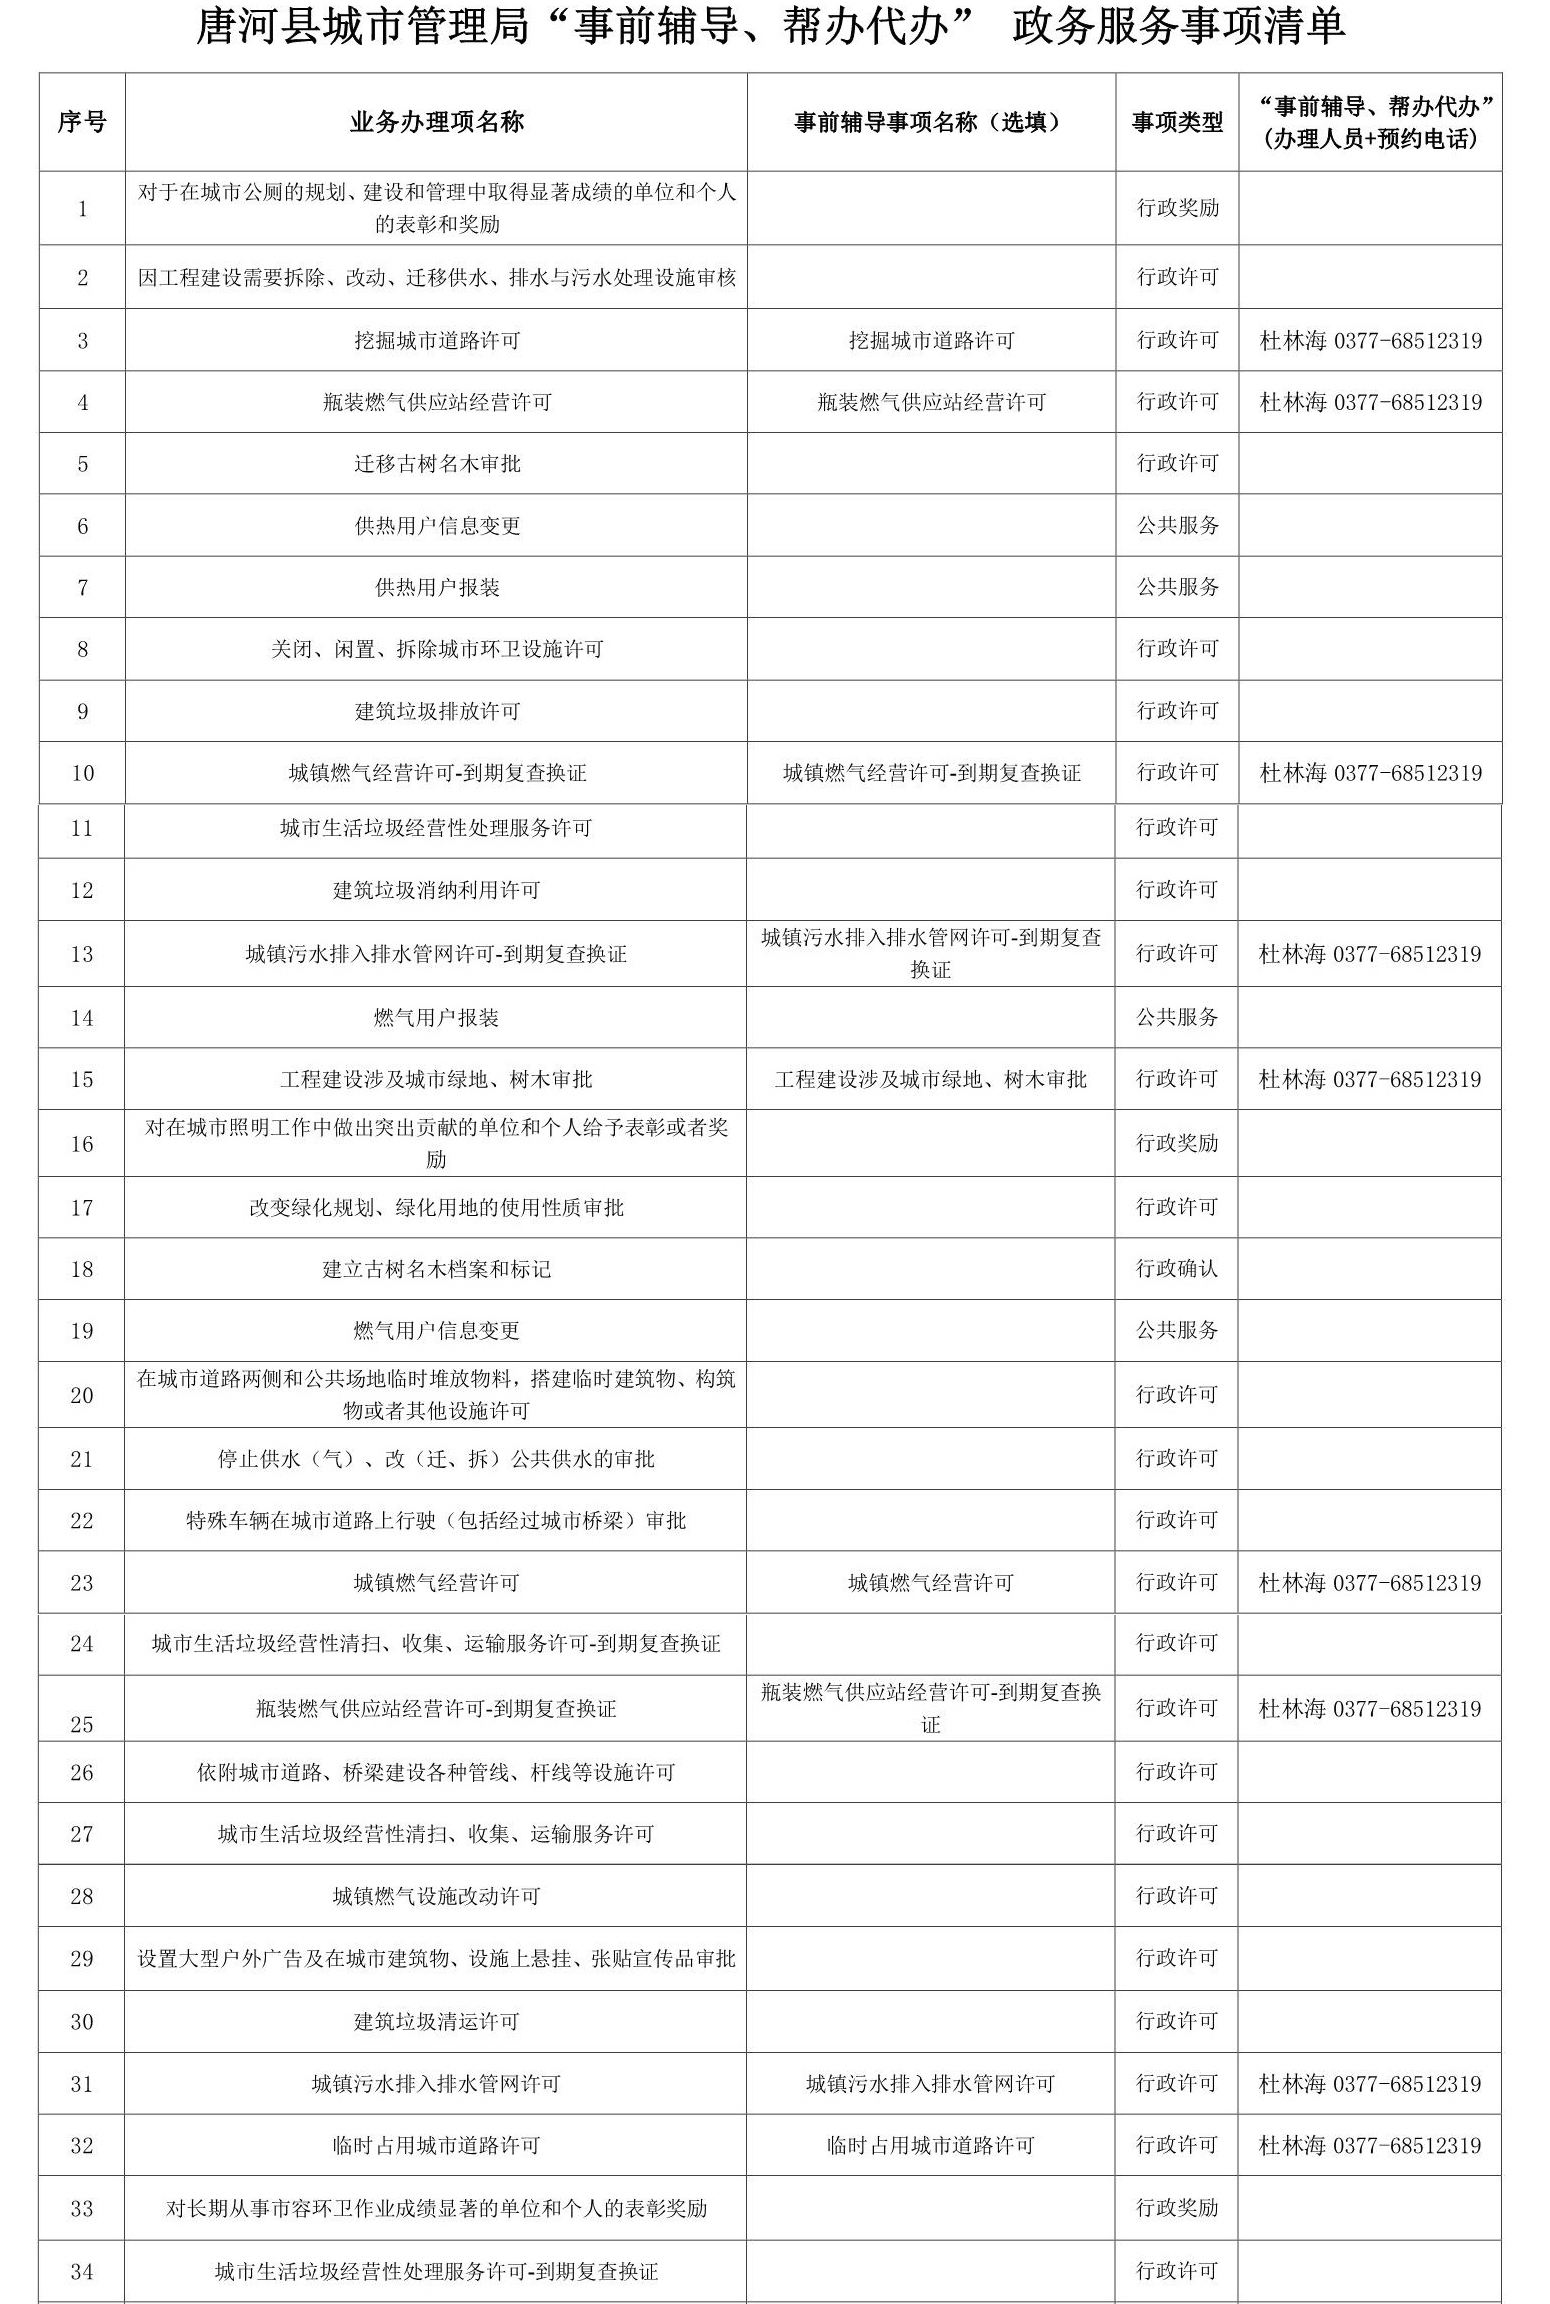 附件2：唐河县城市管理局“事前辅导、帮办代办” 政务服务事项清单_1_副本.jpg